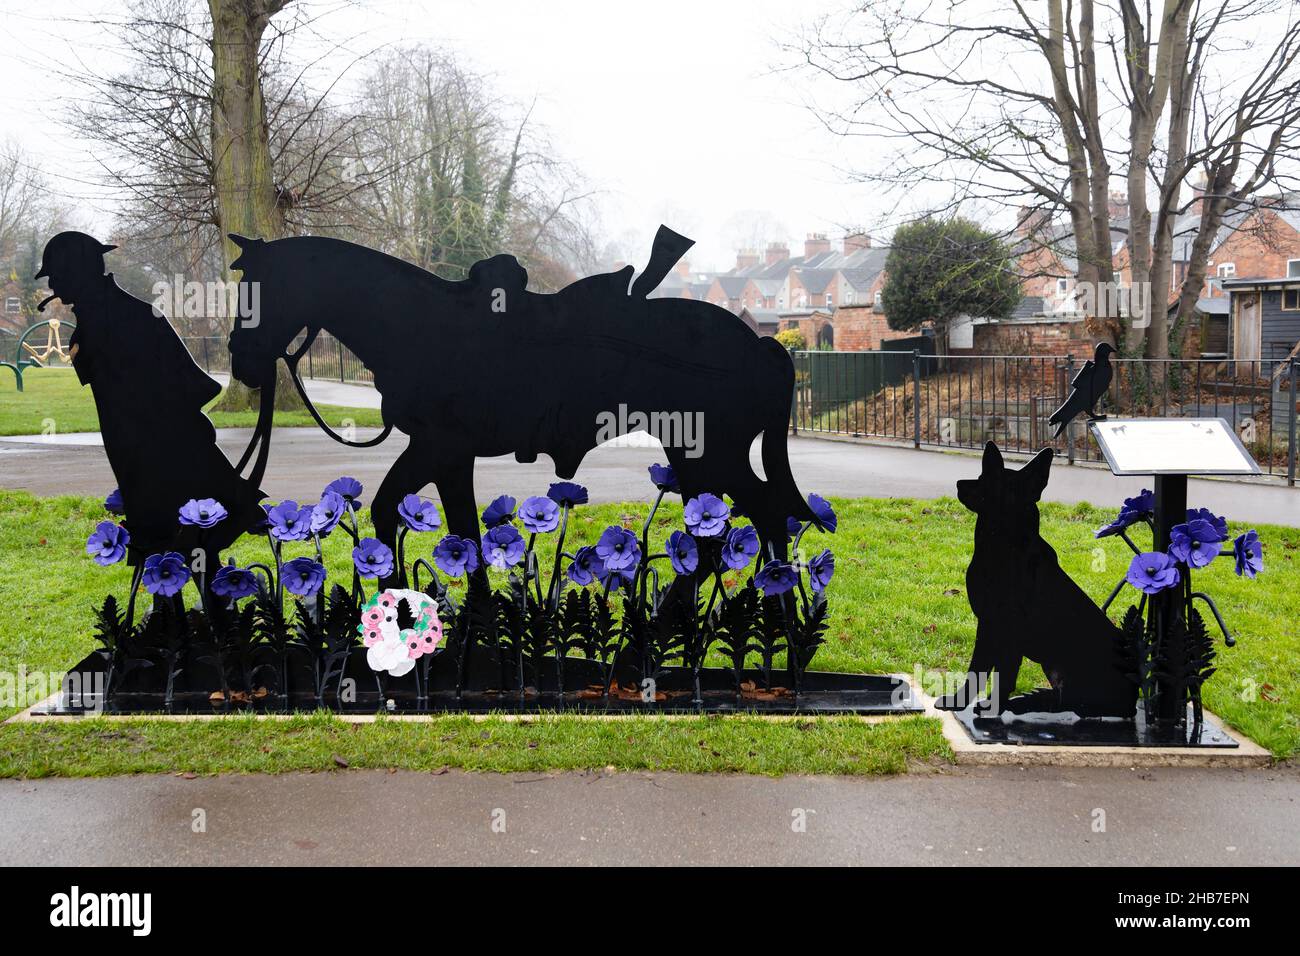 Cavallo di guerra, Silhouette Memorial per gli animali uccisi in servizio di guerra. Papaveri viola. Wyndham Park, Grantham, Lincolnshire, Inghilterra. Foto Stock